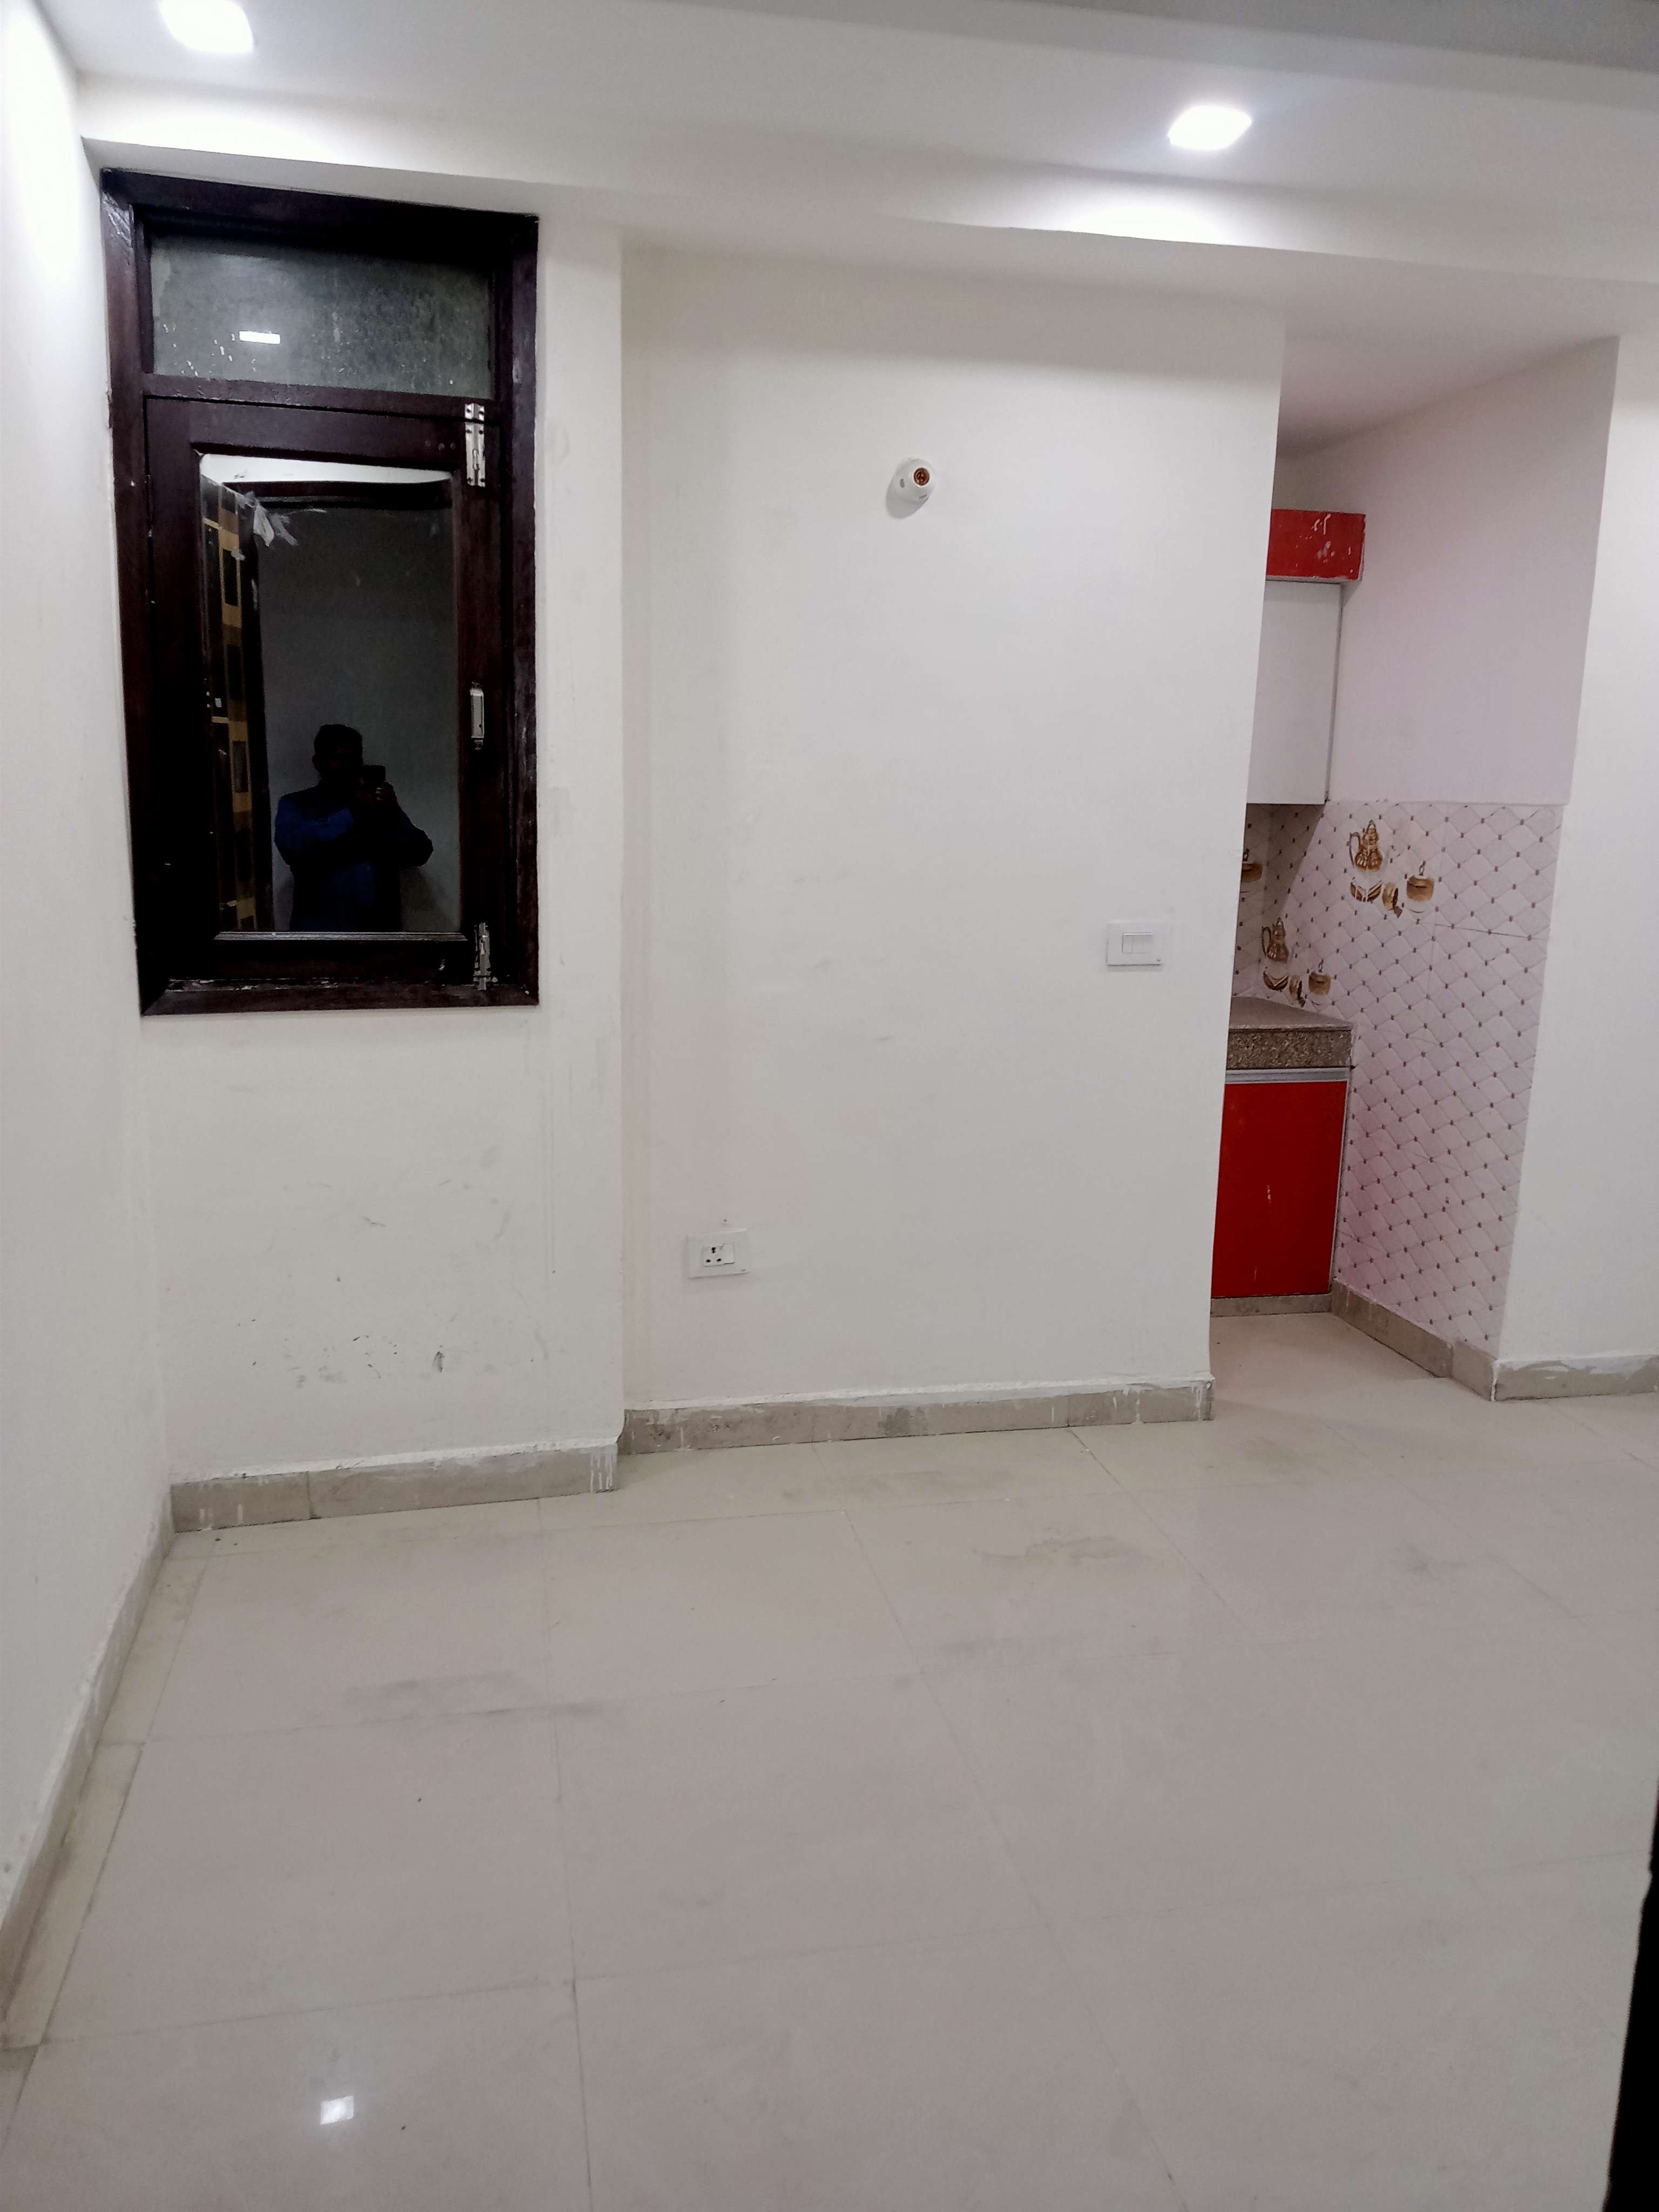 Studio Builder Floor For Rent in Neb Sarai Delhi 6176932